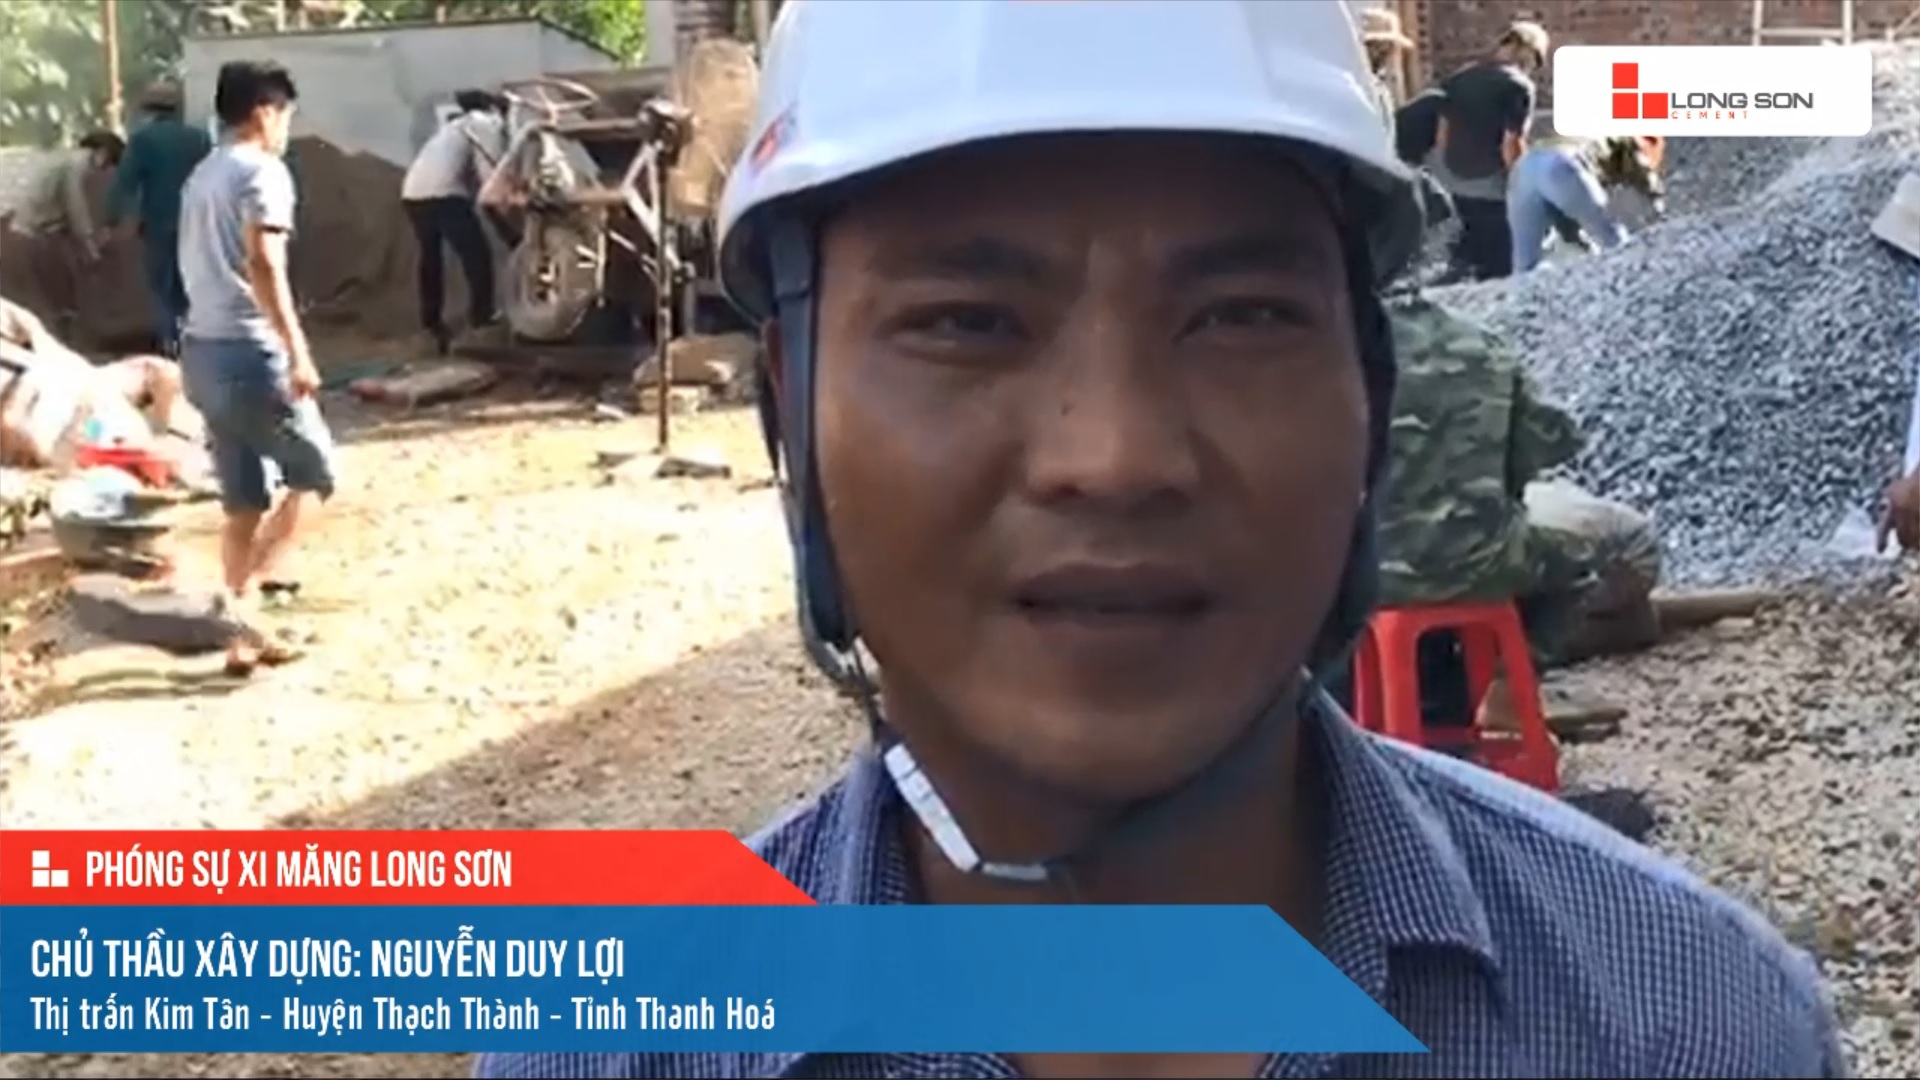 Phóng sự công trình sử dụng xi măng Long Sơn tại Thanh Hóa ngày 30/07/2021